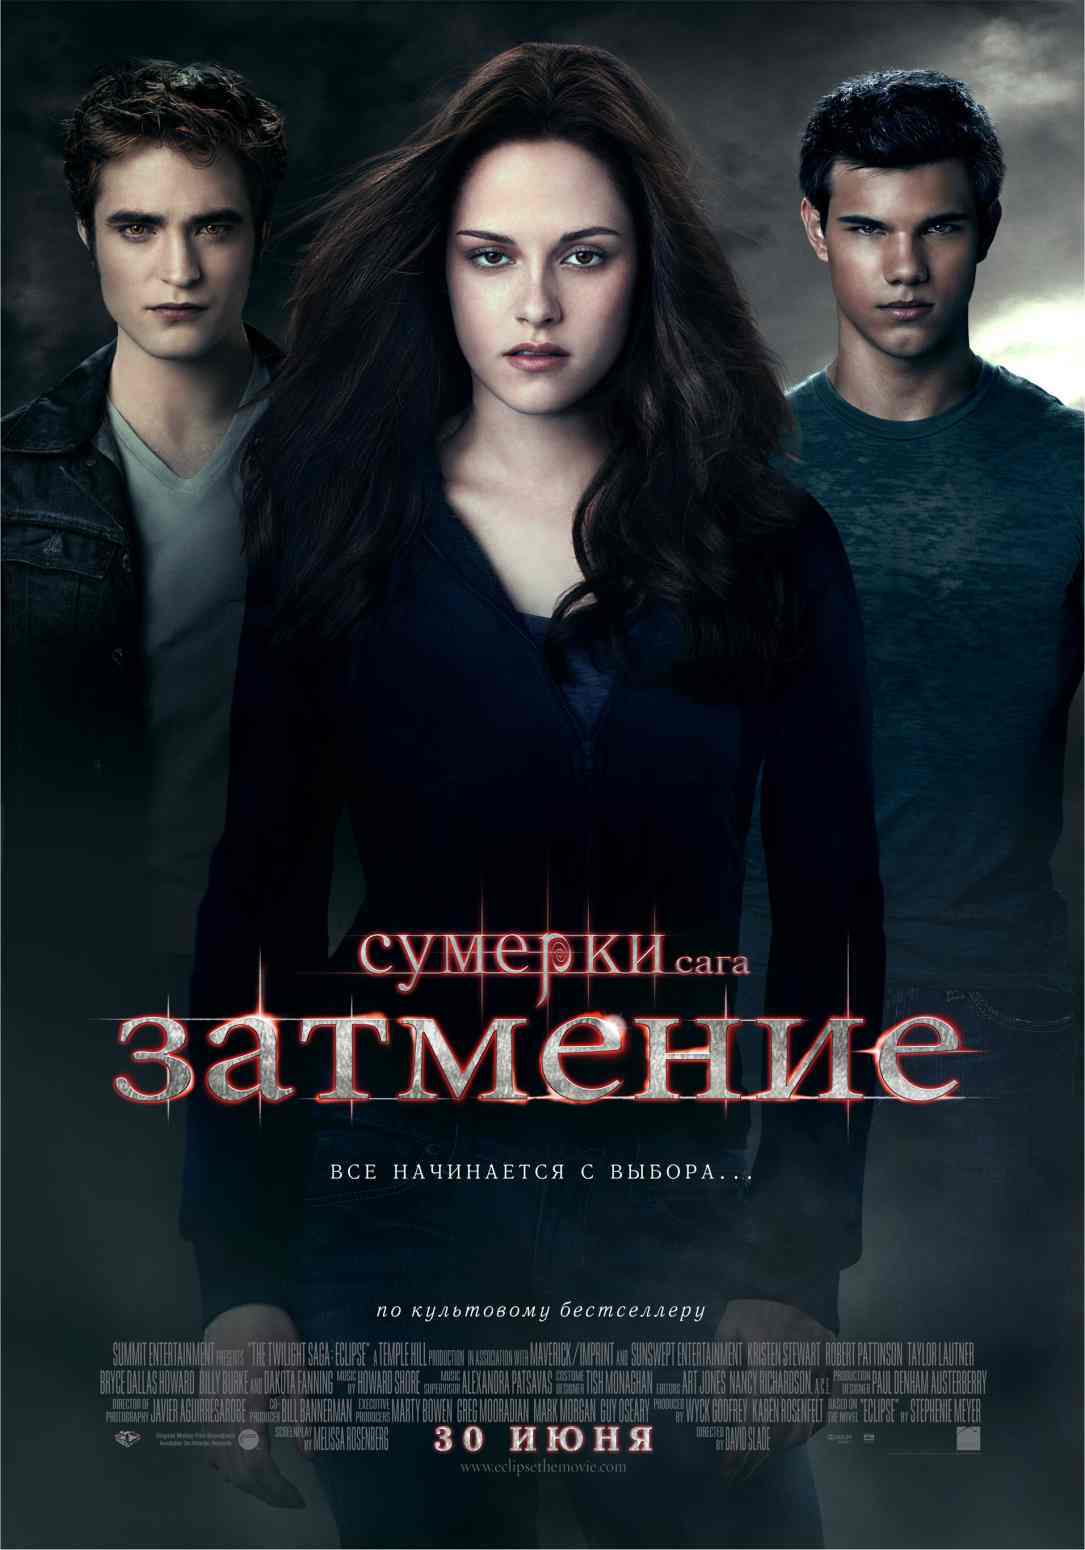 Официальный русскоязычный постер "Затмения"